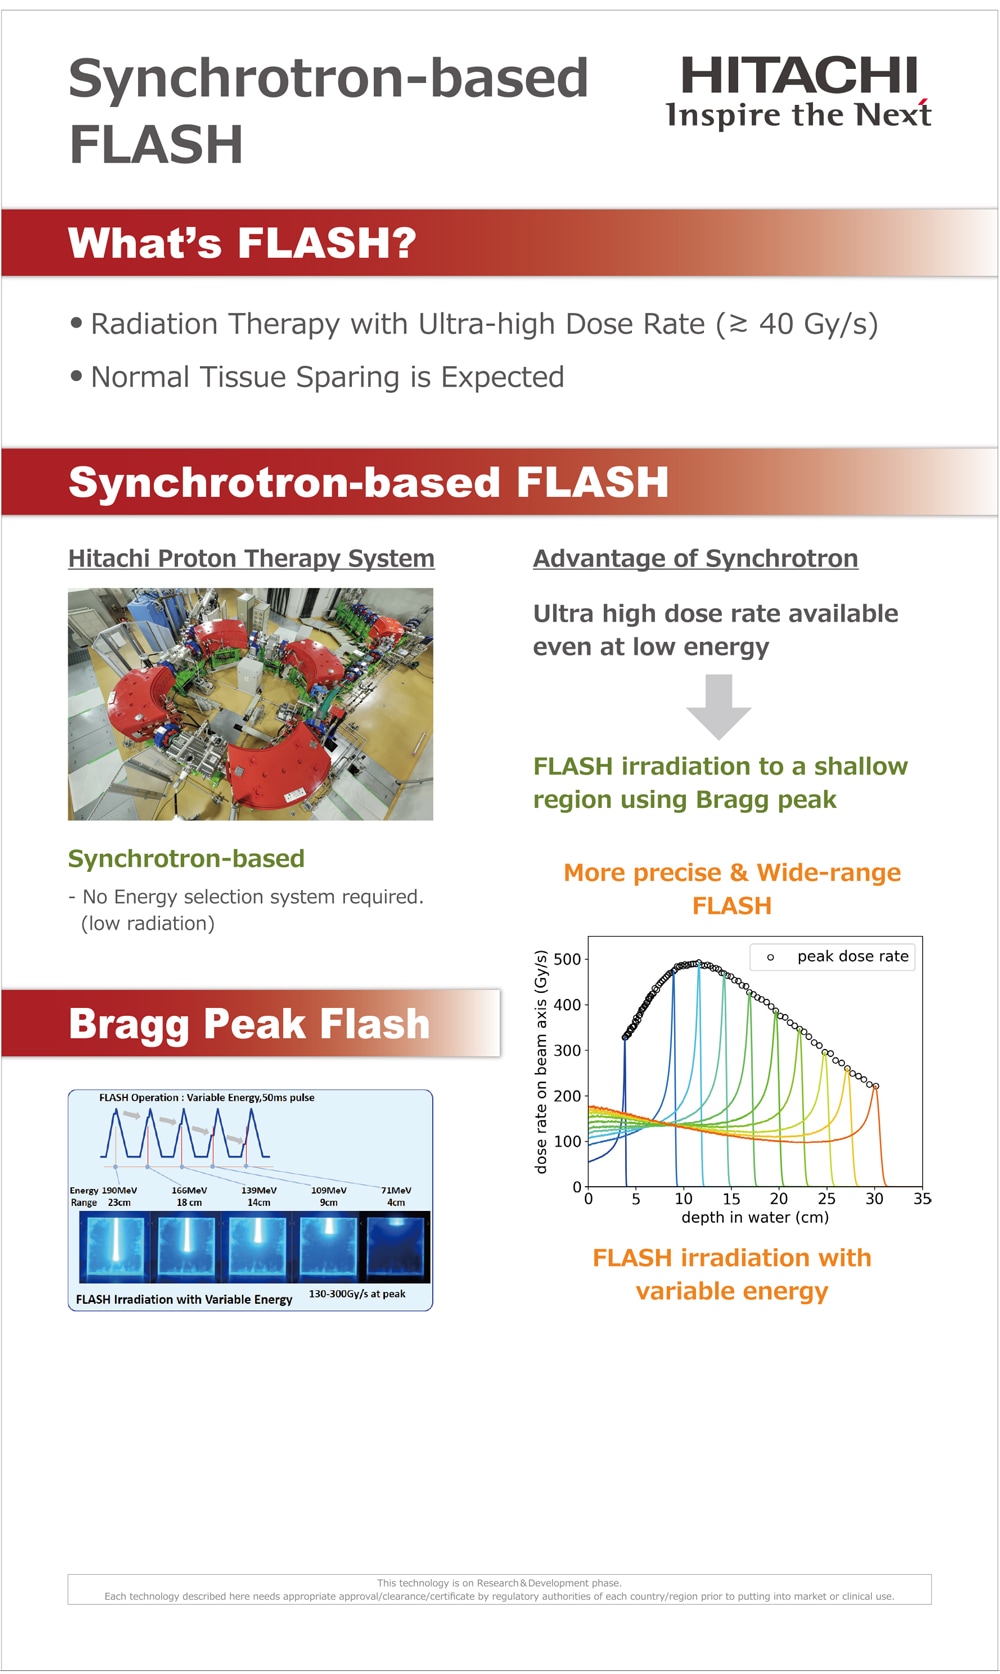 Synchrotron-based FLASH